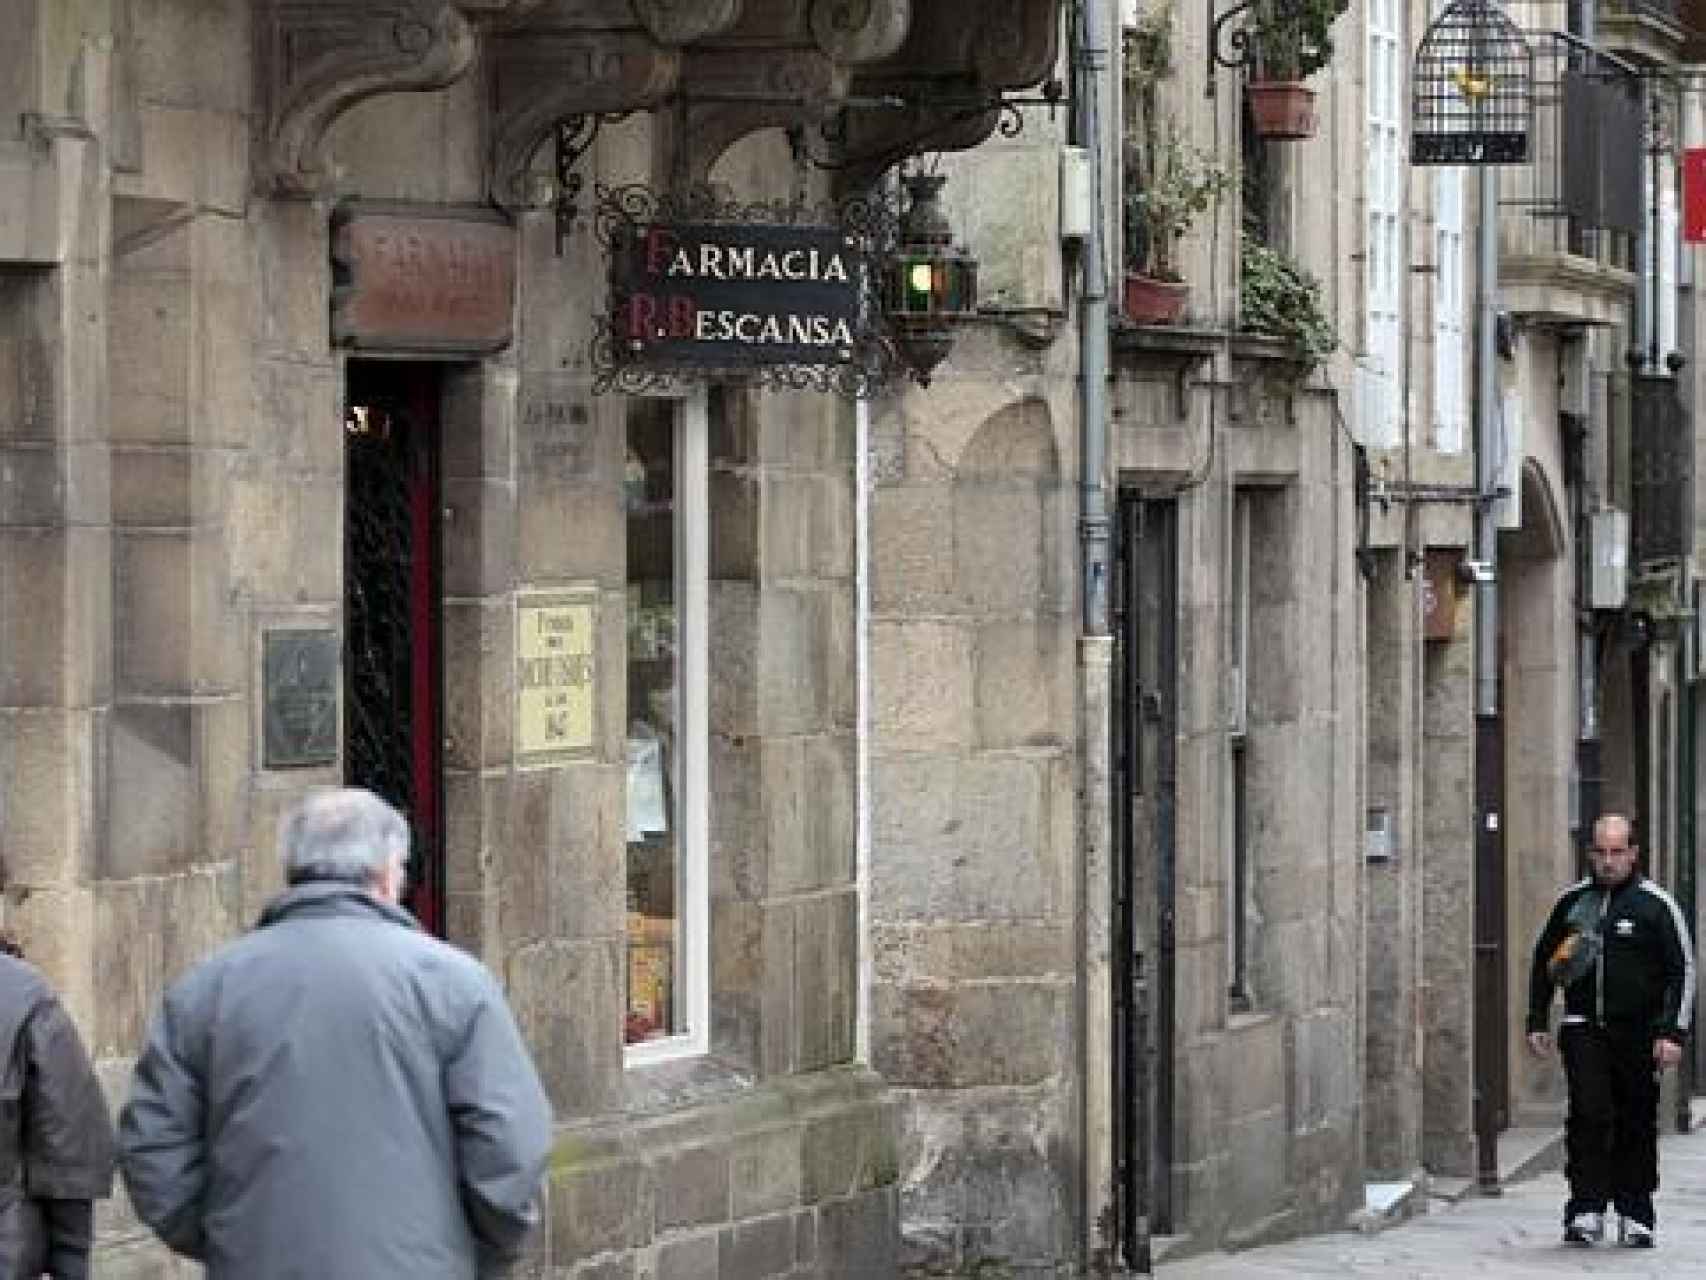 La farmacia Bescansa en Santiago de Compostela.